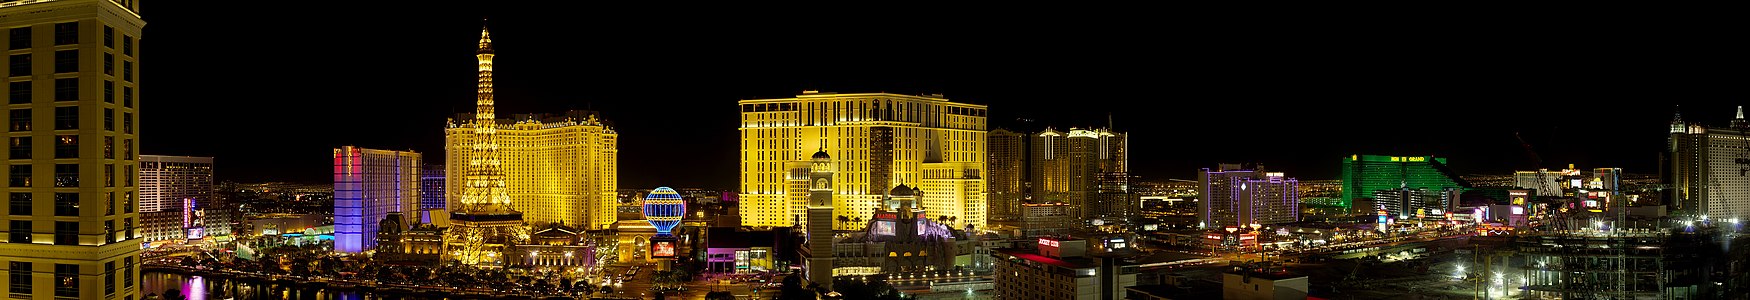 Night Panorama of the Las Vegas Strip